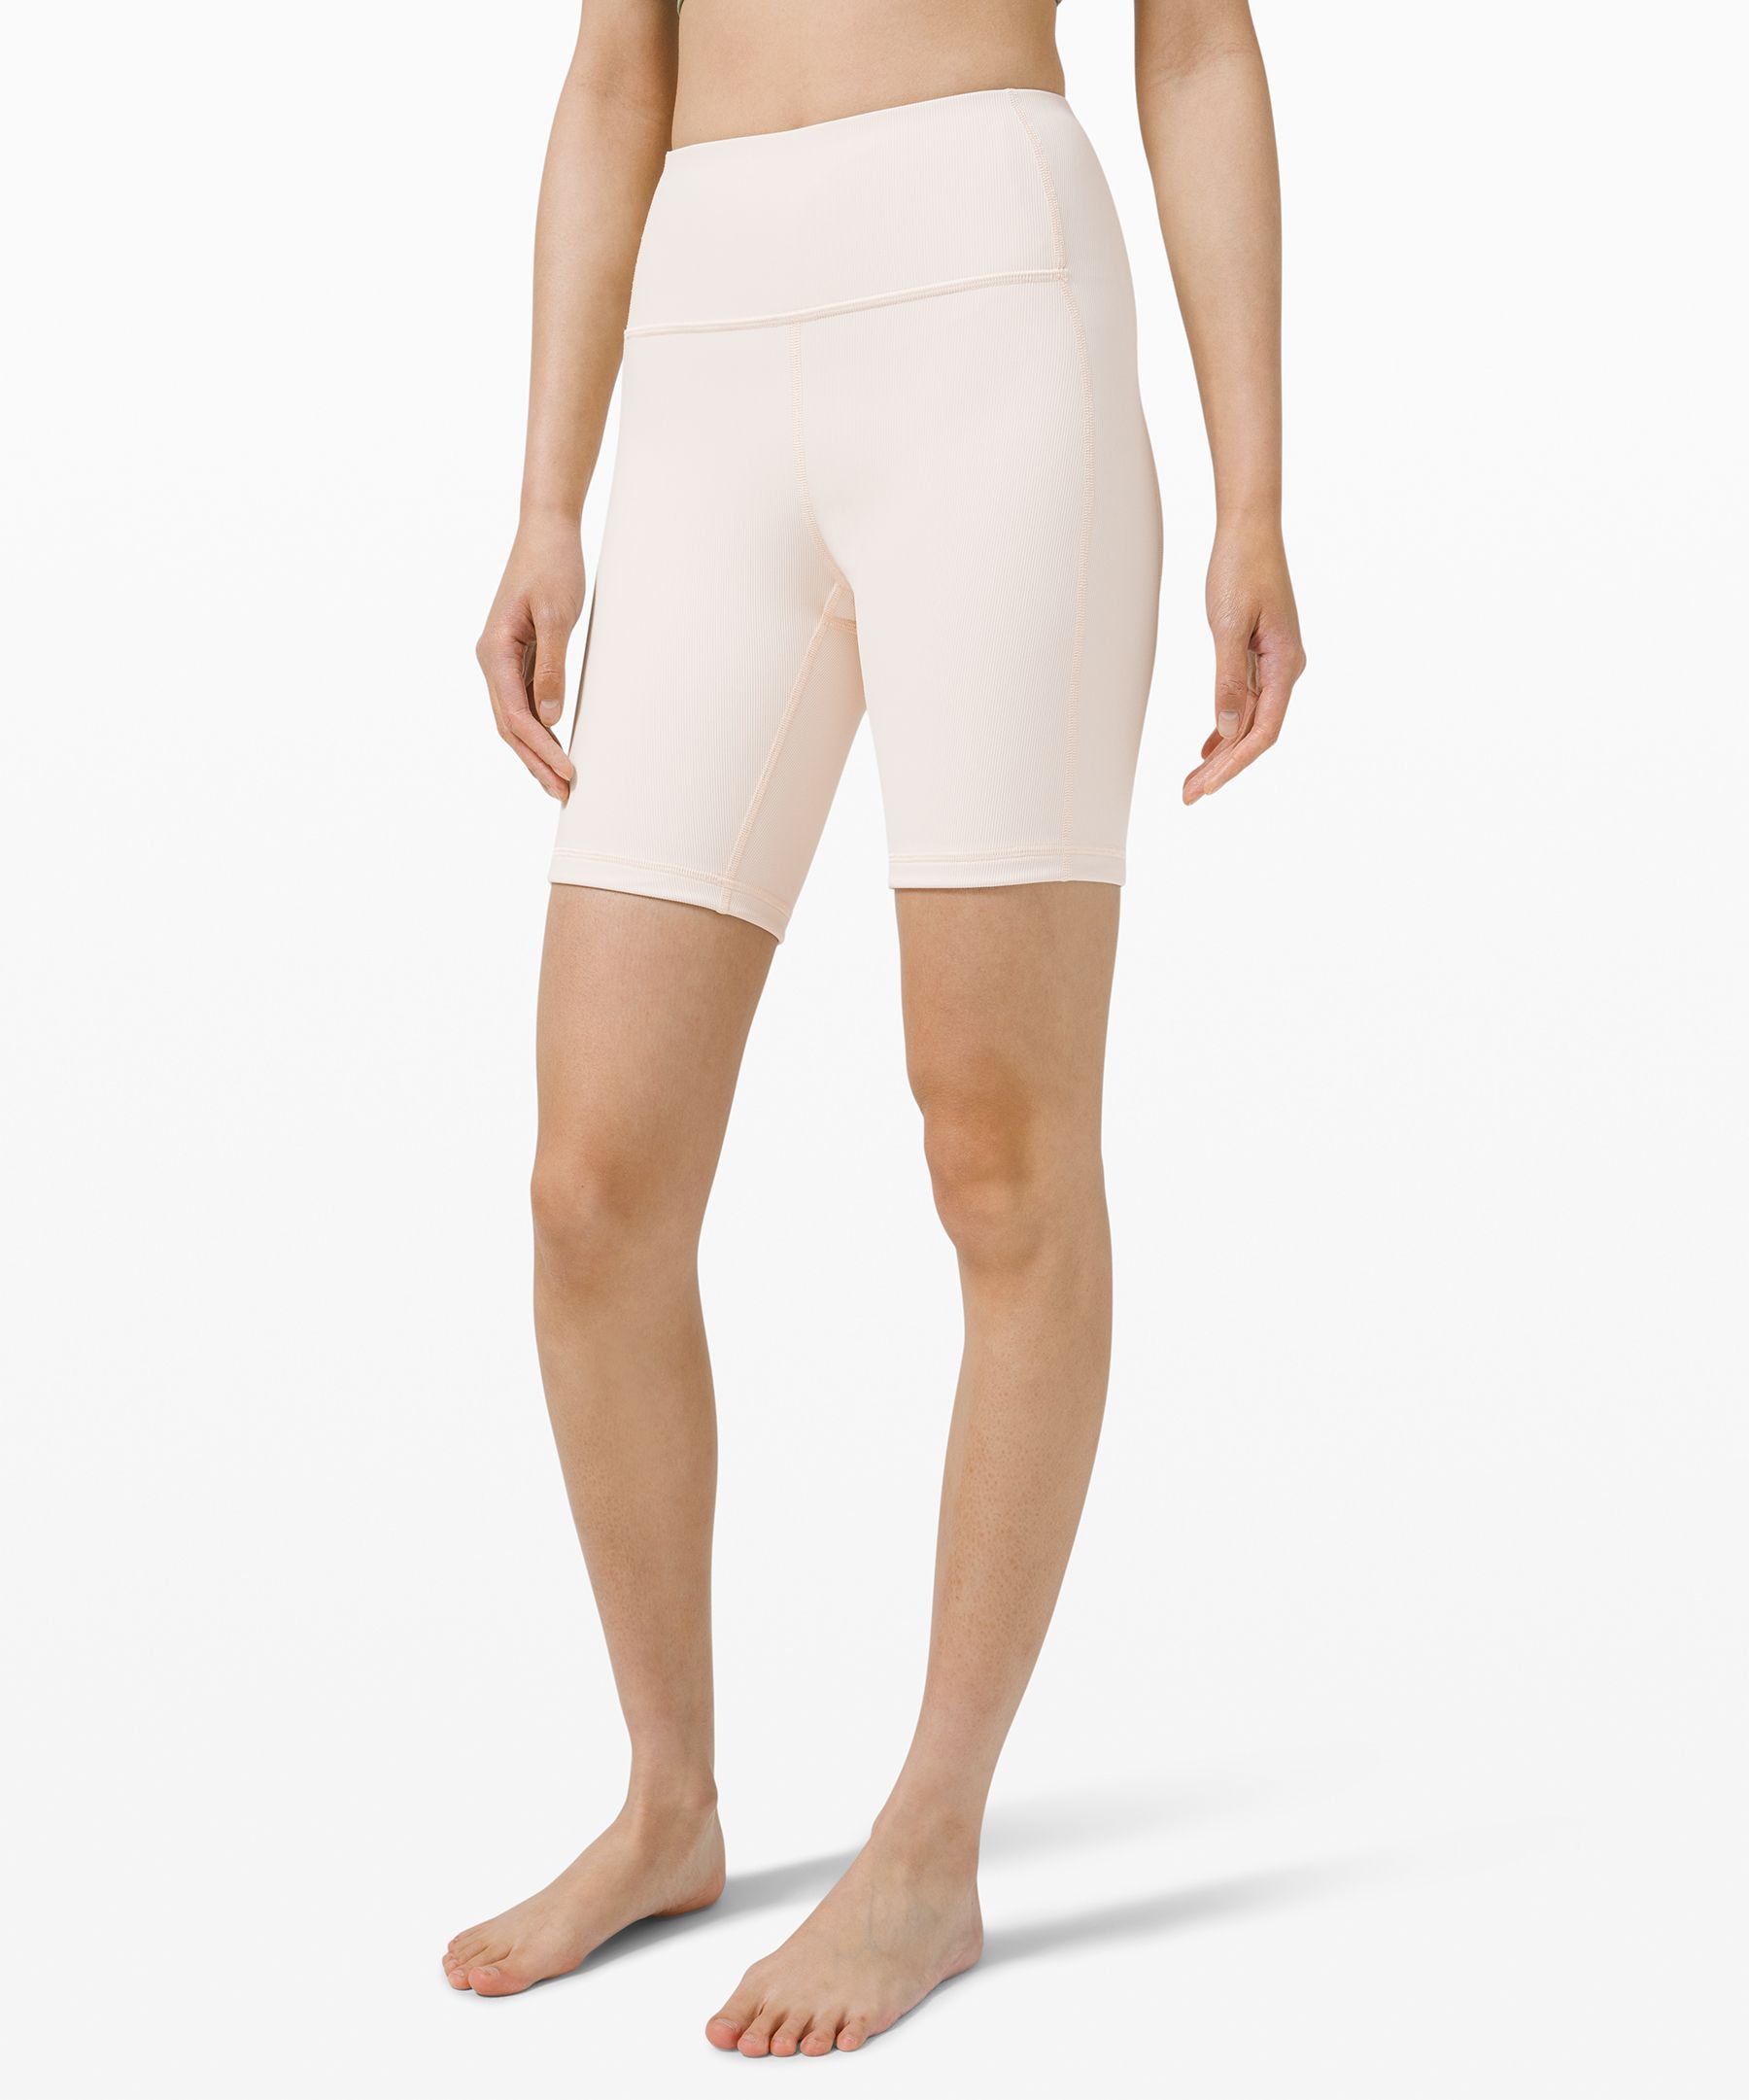 lululemon knee length shorts